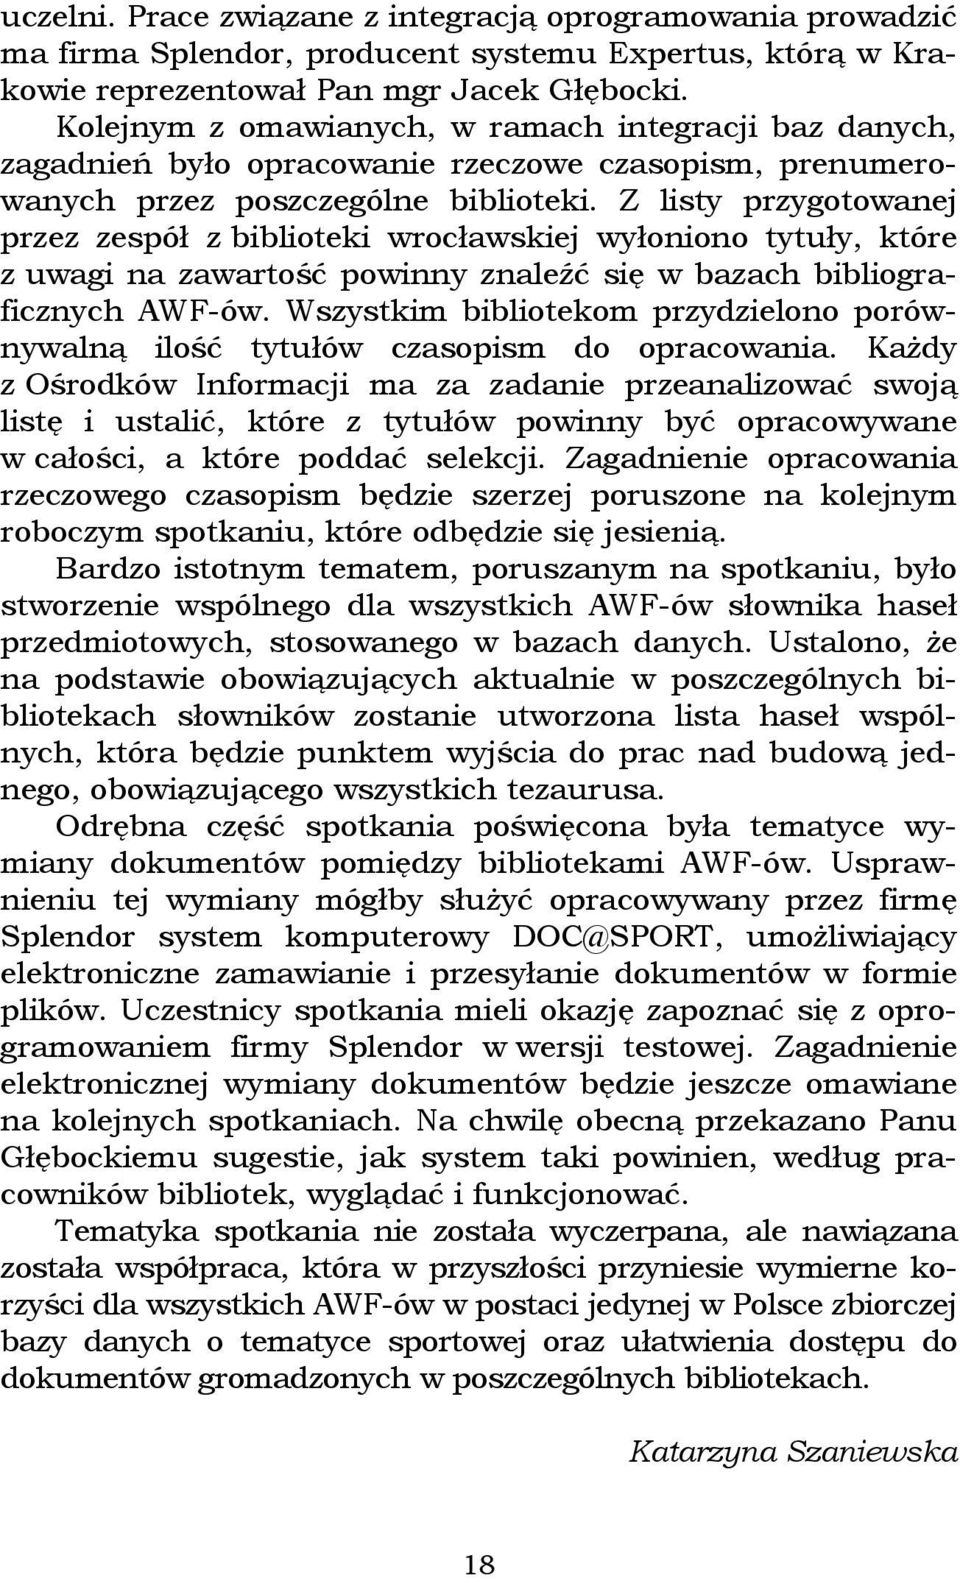 Z listy przygotowanej przez zespół z biblioteki wrocławskiej wyłoniono tytuły, które z uwagi na zawartość powinny znaleźć się w bazach bibliograficznych AWF-ów.